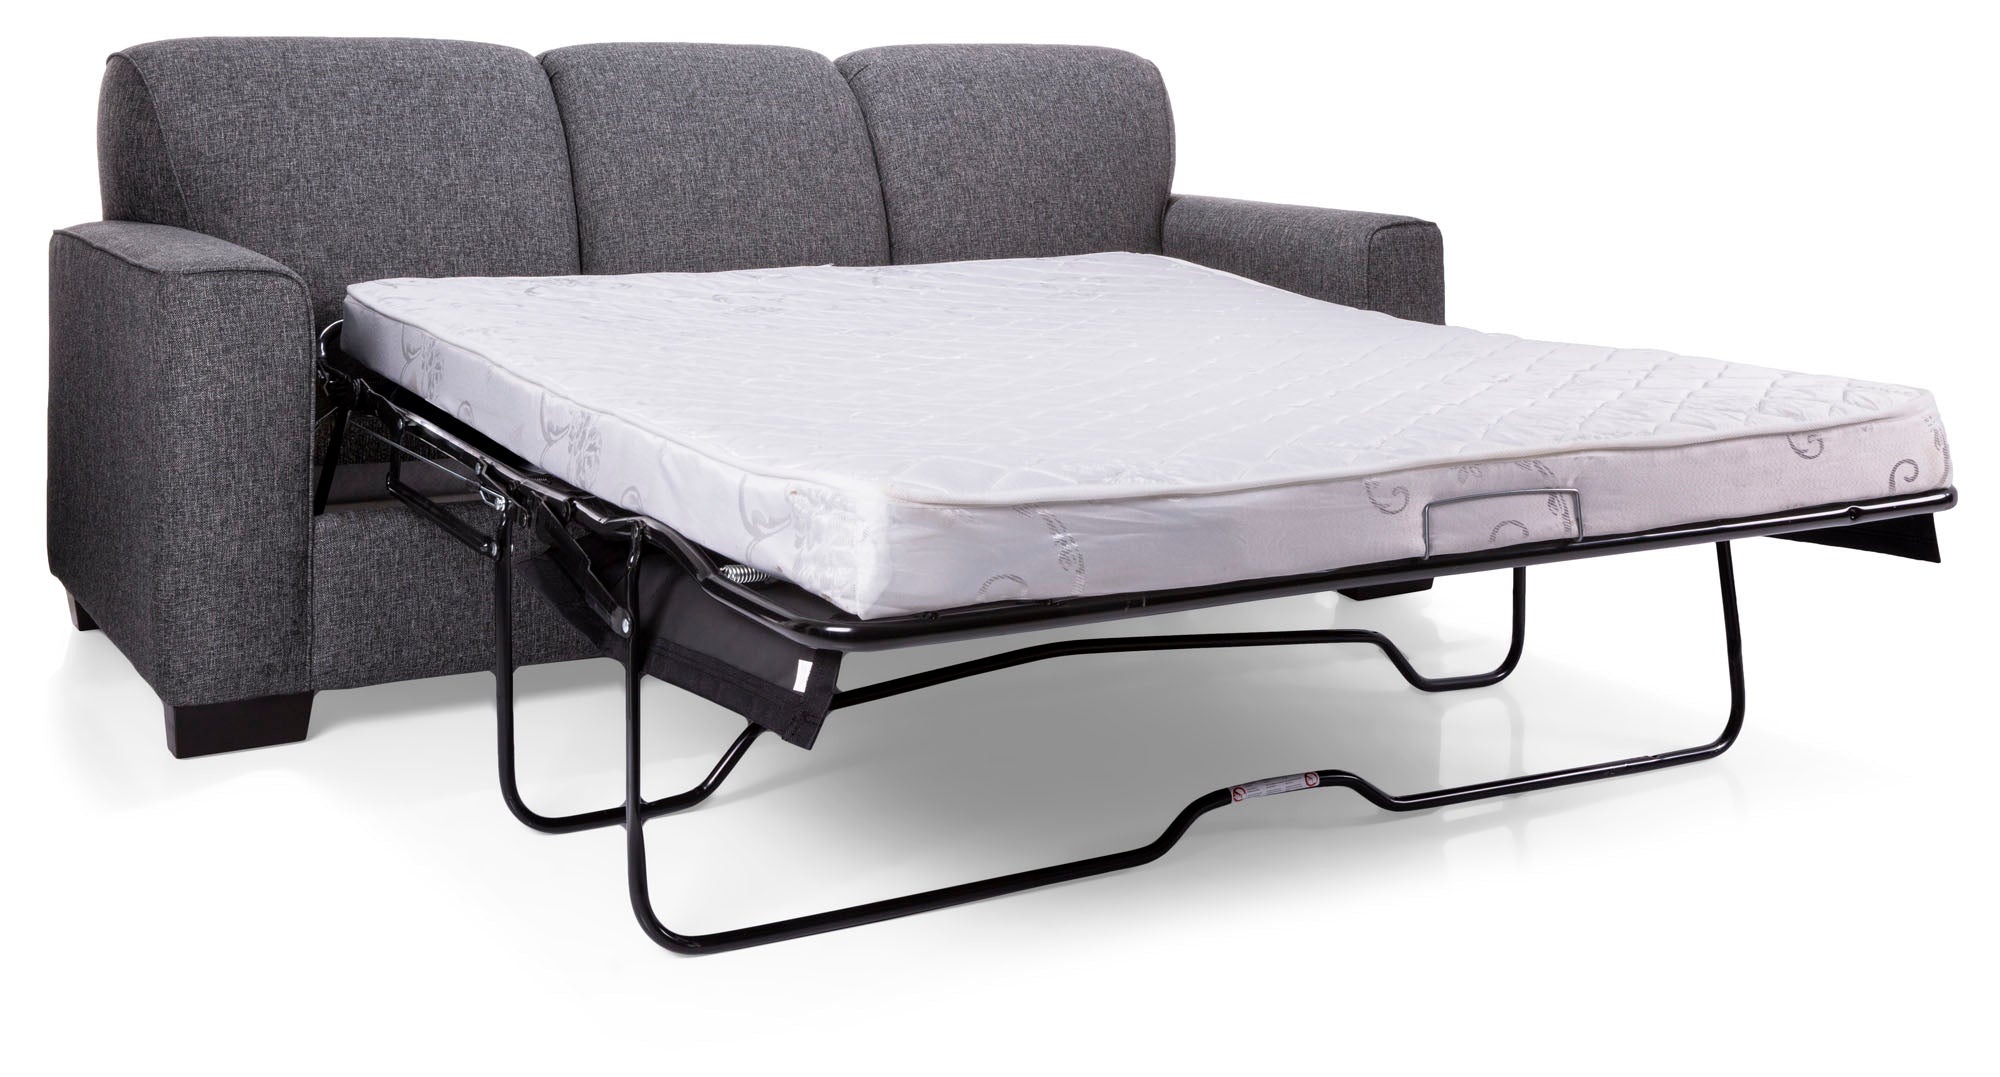 Lotus Queen Sofa Bed - MJM Furniture